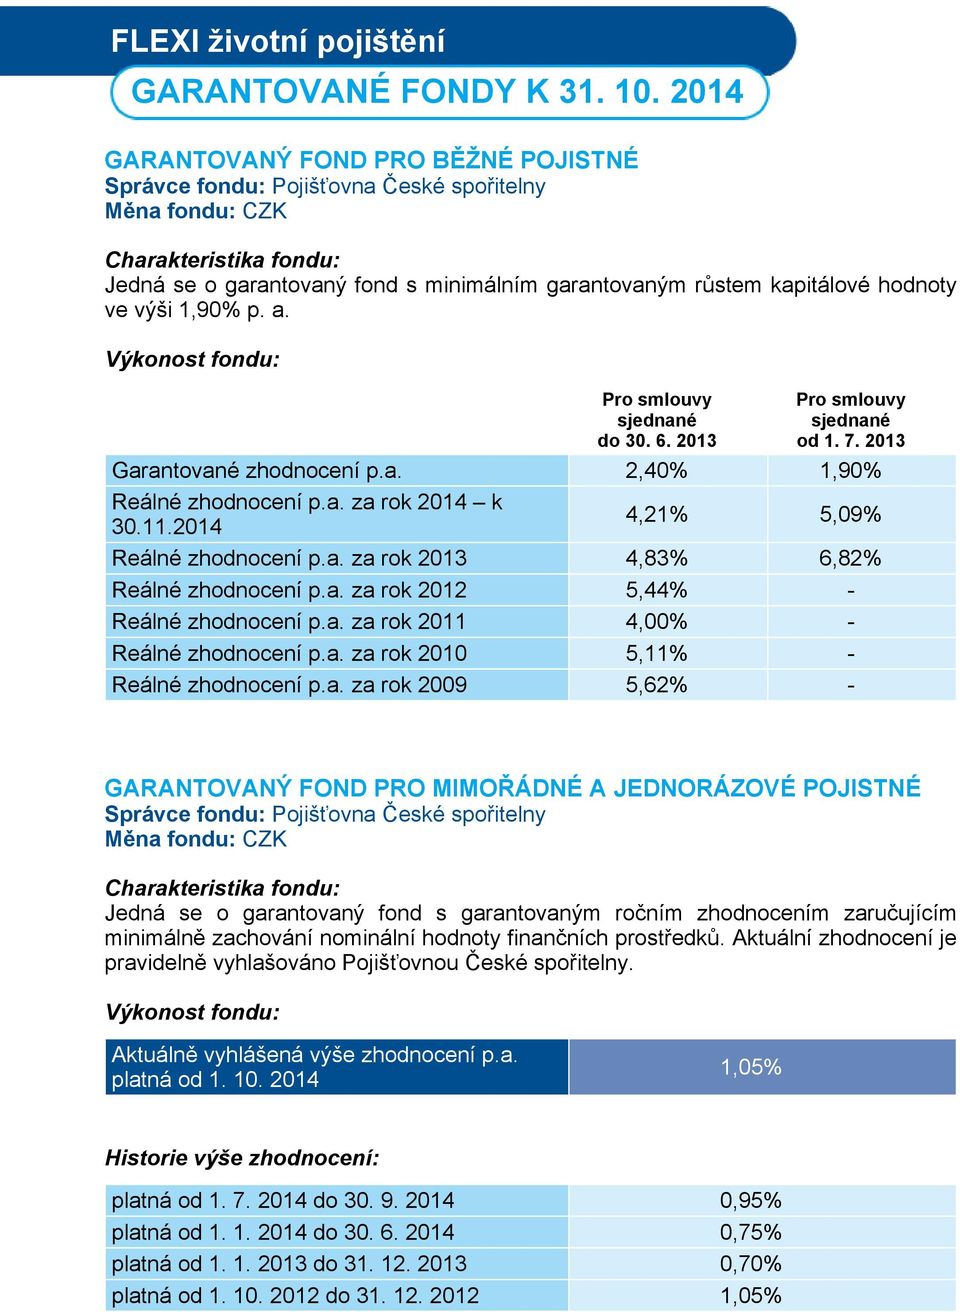 Výkonost fondu: Pro smlouvy sjednané do 30. 6. 2013 Pro smlouvy sjednané od 1. 7. 2013 Garantované zhodnocení p.a. 2,40% 1,90% Reálné zhodnocení p.a. za rok 2014 k 30.11.